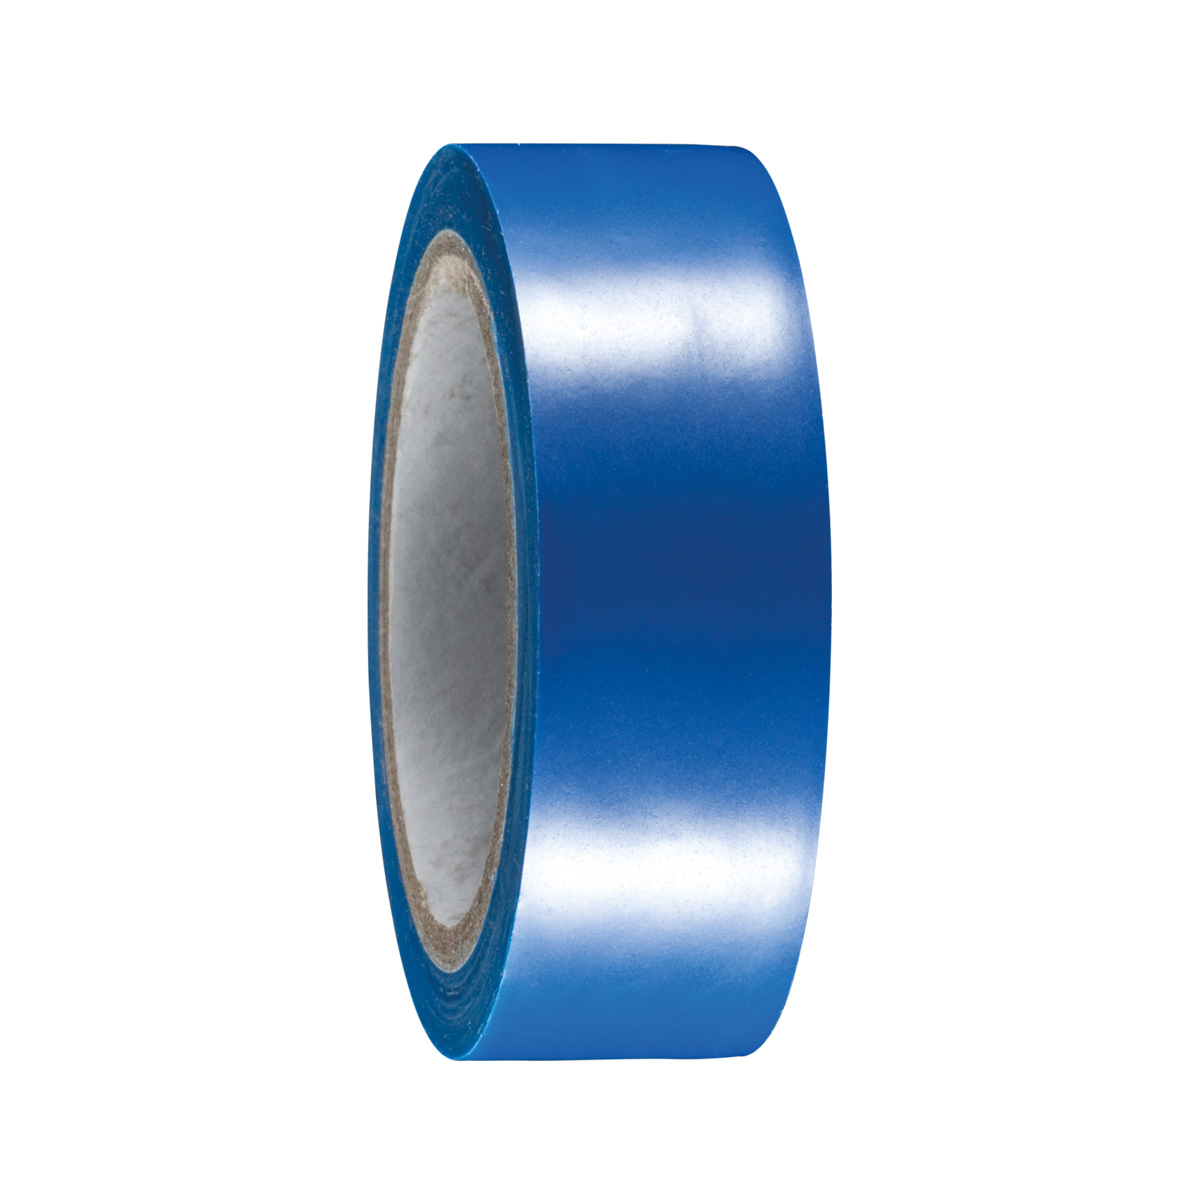 Insulate tape 19mm x 10m, blue 